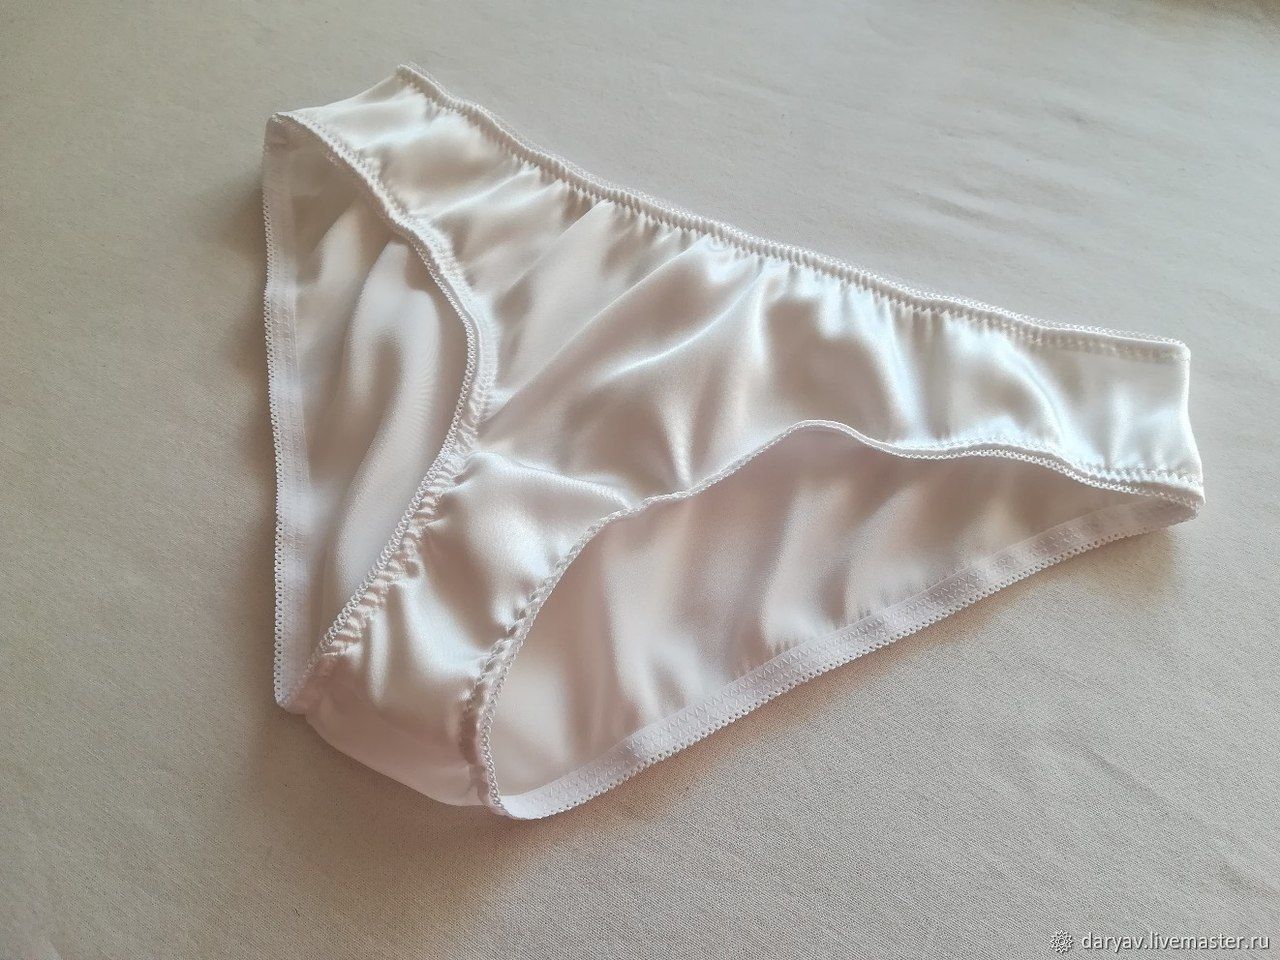 Order White silk panties. 